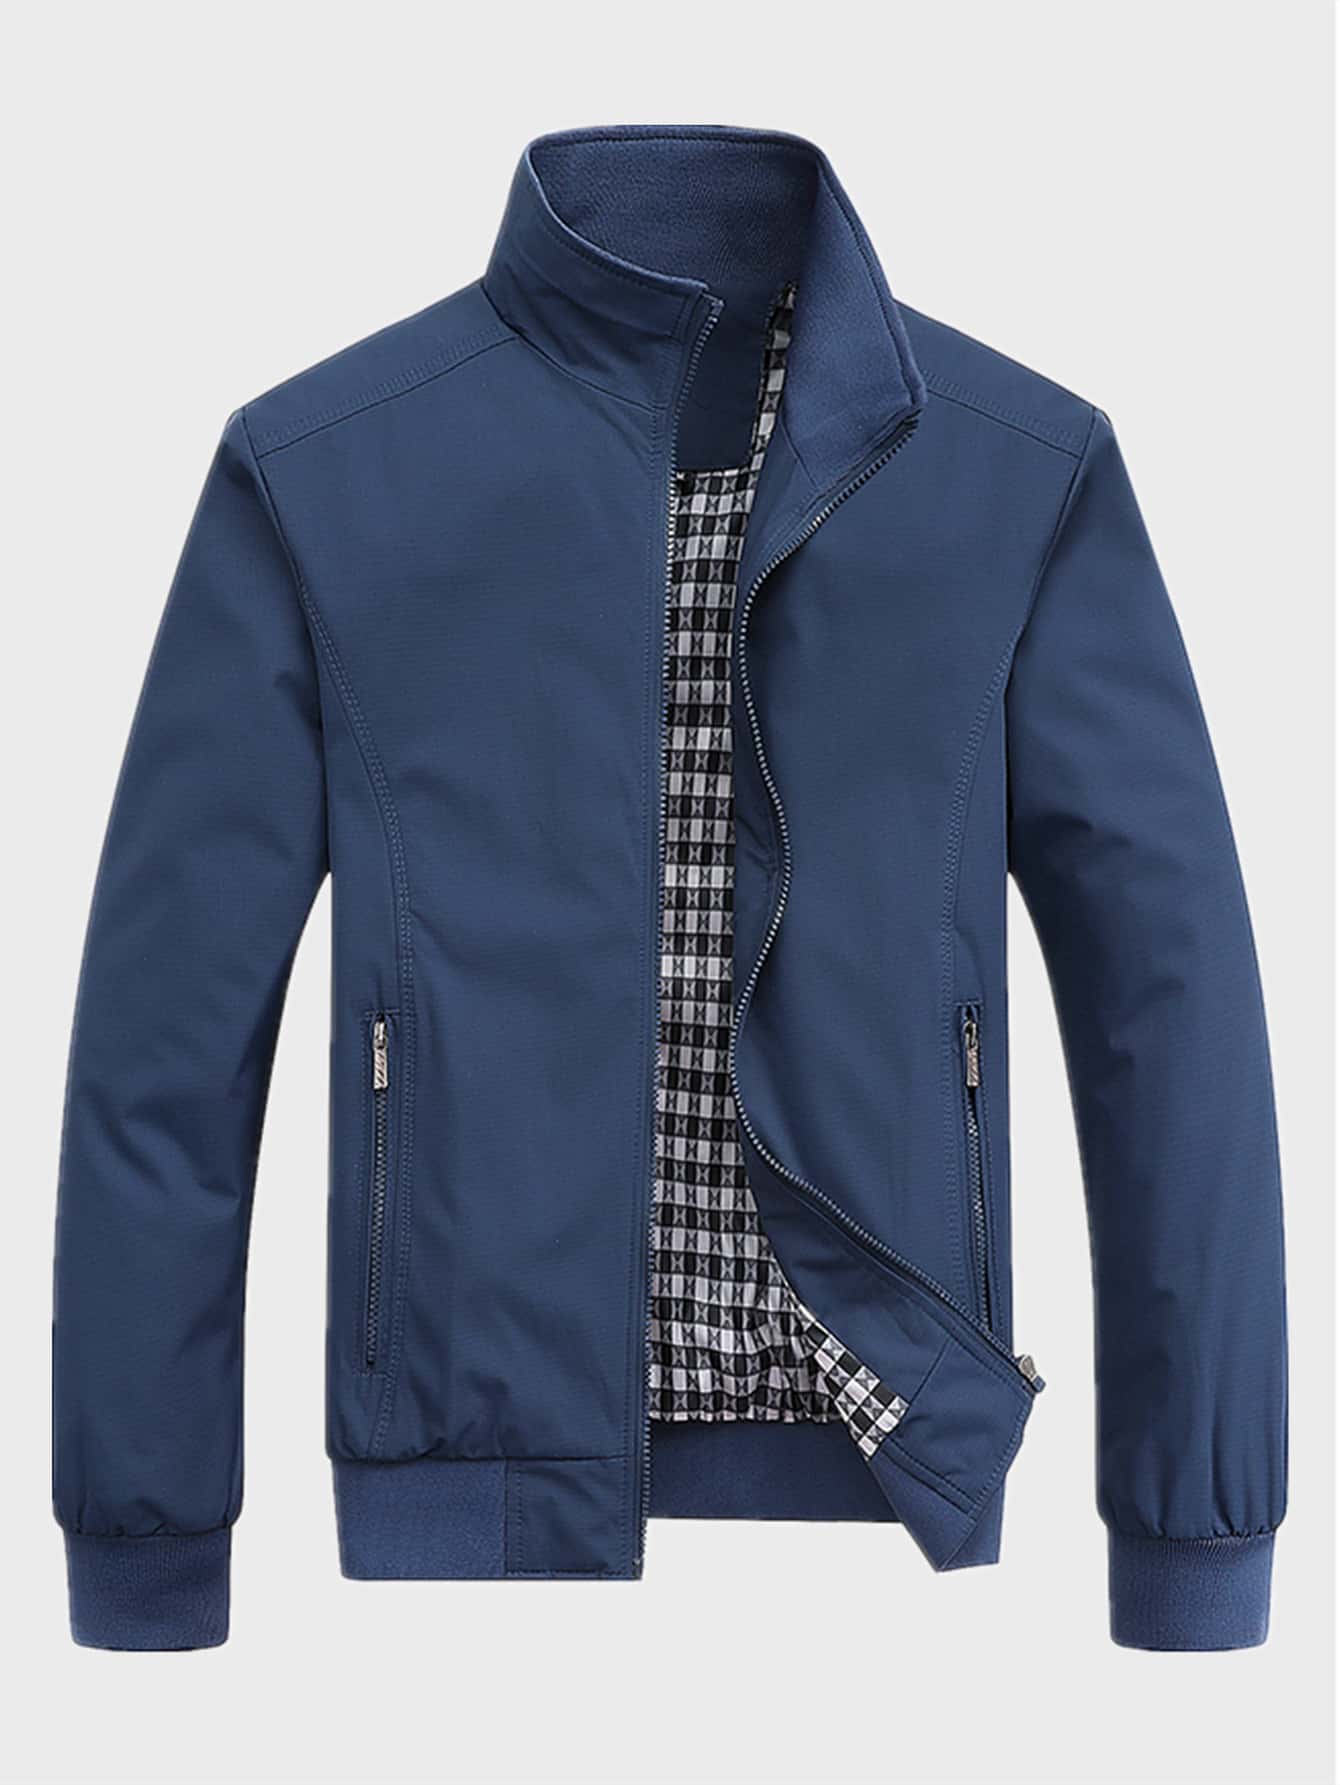 Мужская повседневная куртка с застежкой-молнией и воротником-стойкой Manfinity Homme, синий